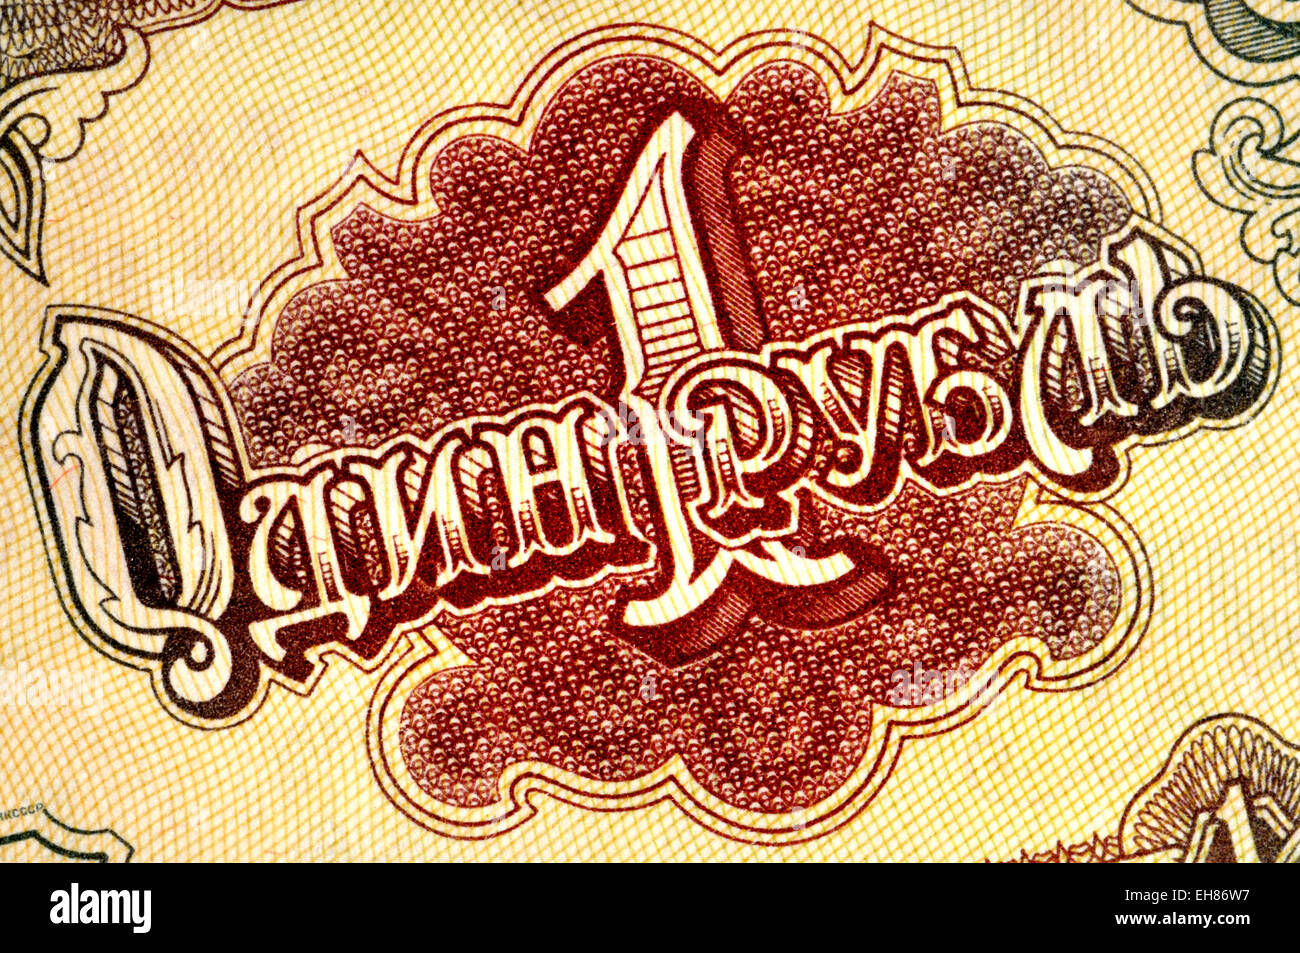 Dettaglio da un 1991 russo banconota che mostra "Un rublo' in alfabeto cirillico Foto Stock